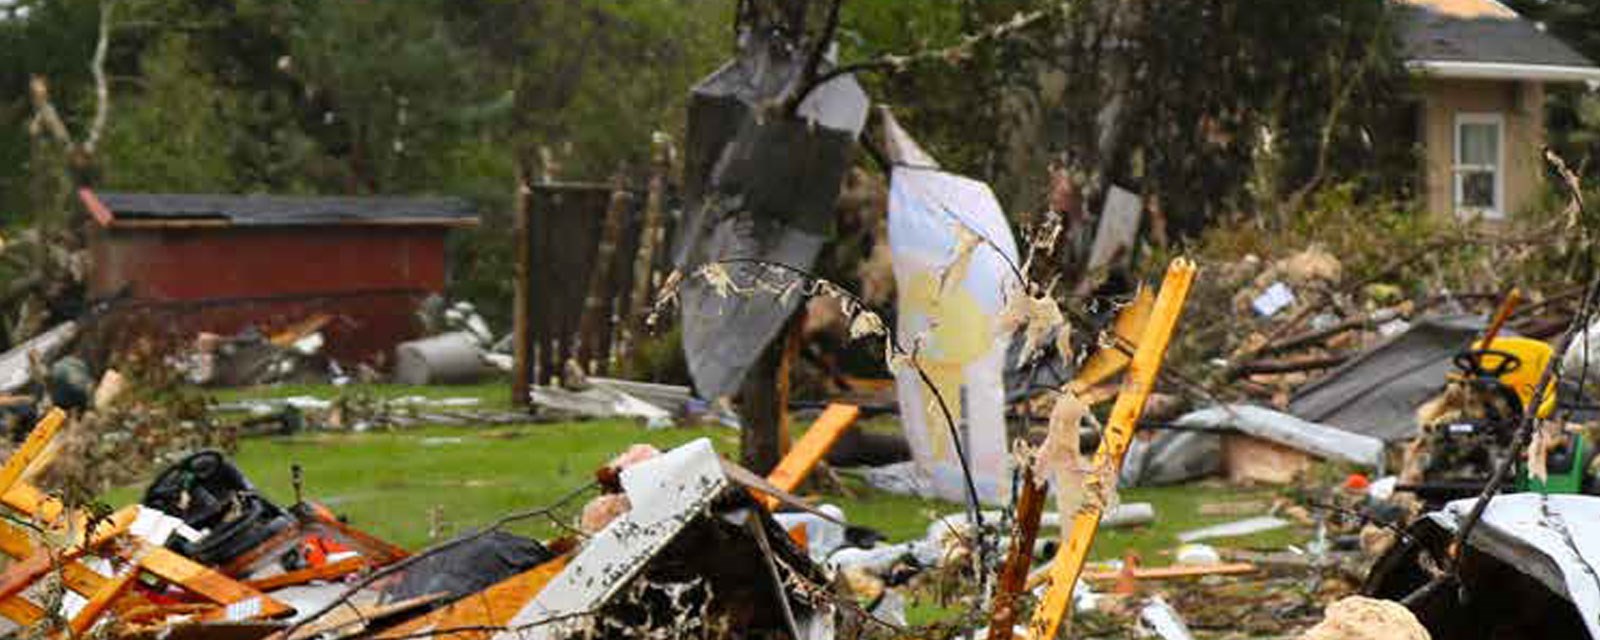 Et ødelagt boligområde i canada etter tornado